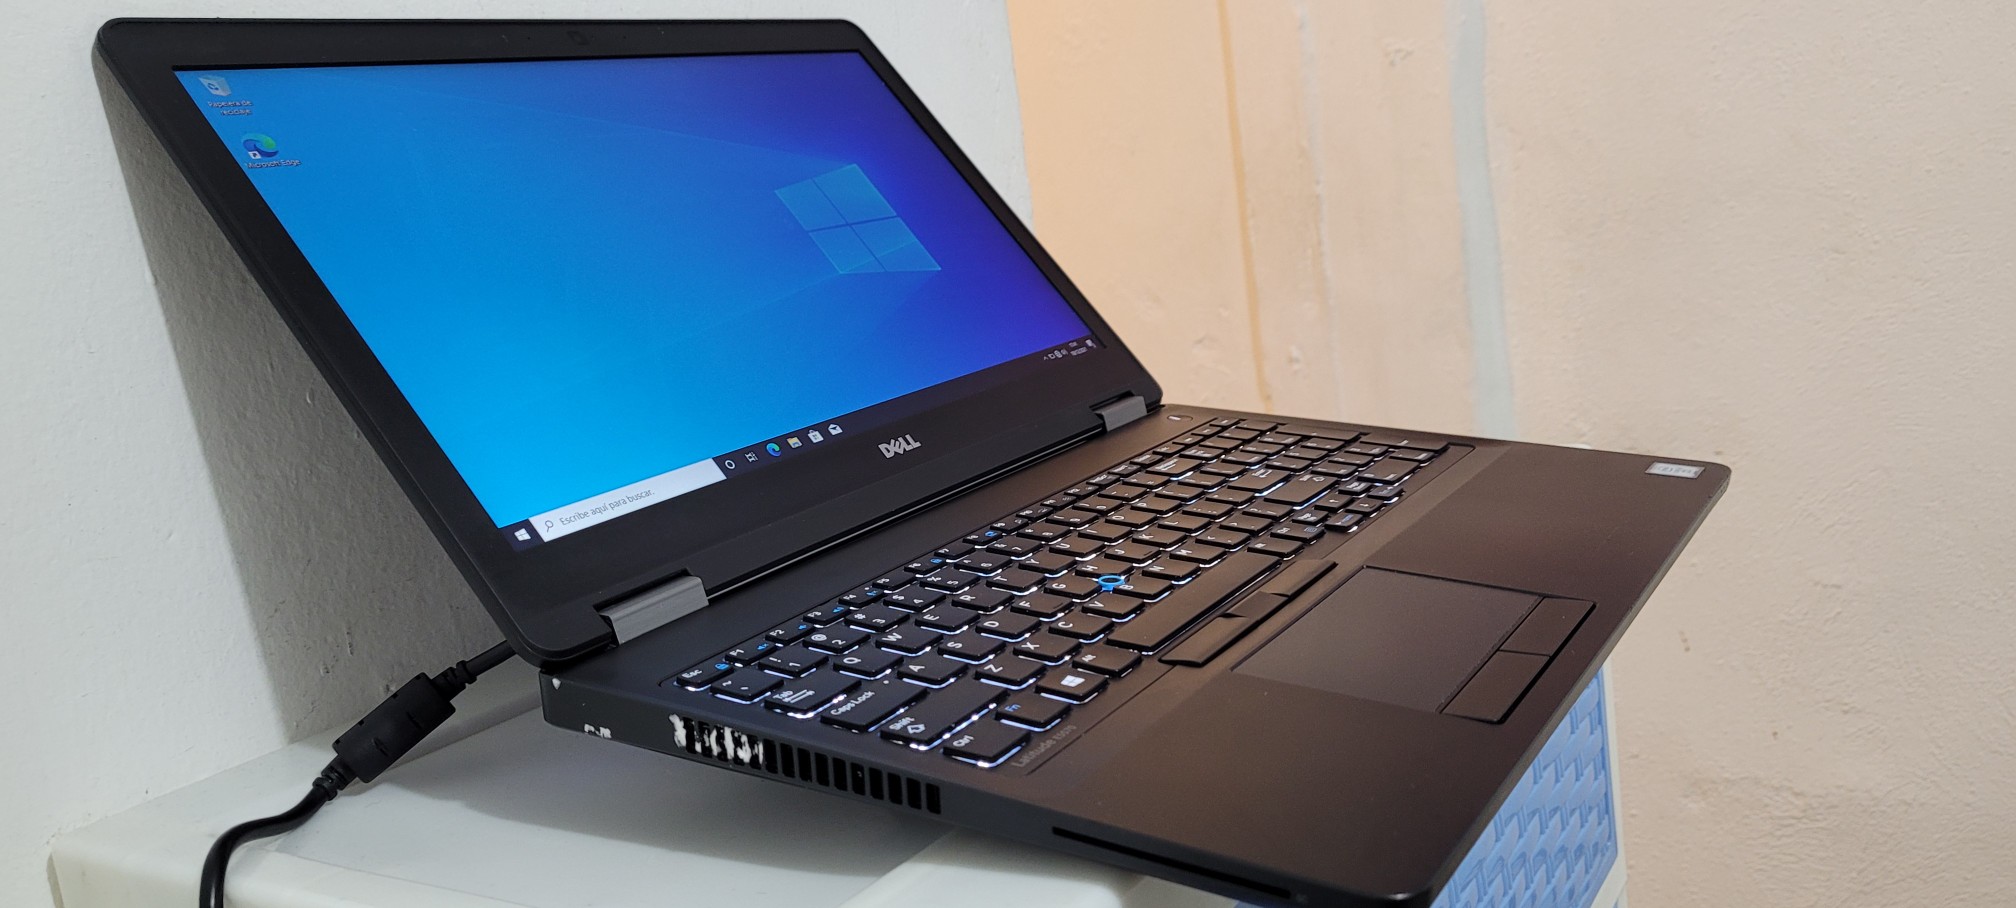 computadoras y laptops - Dell 5570 17 Pulg Core i7 6ta Gen Ram 16gb Disco 256gb Video intel Y Aty Radeon 1